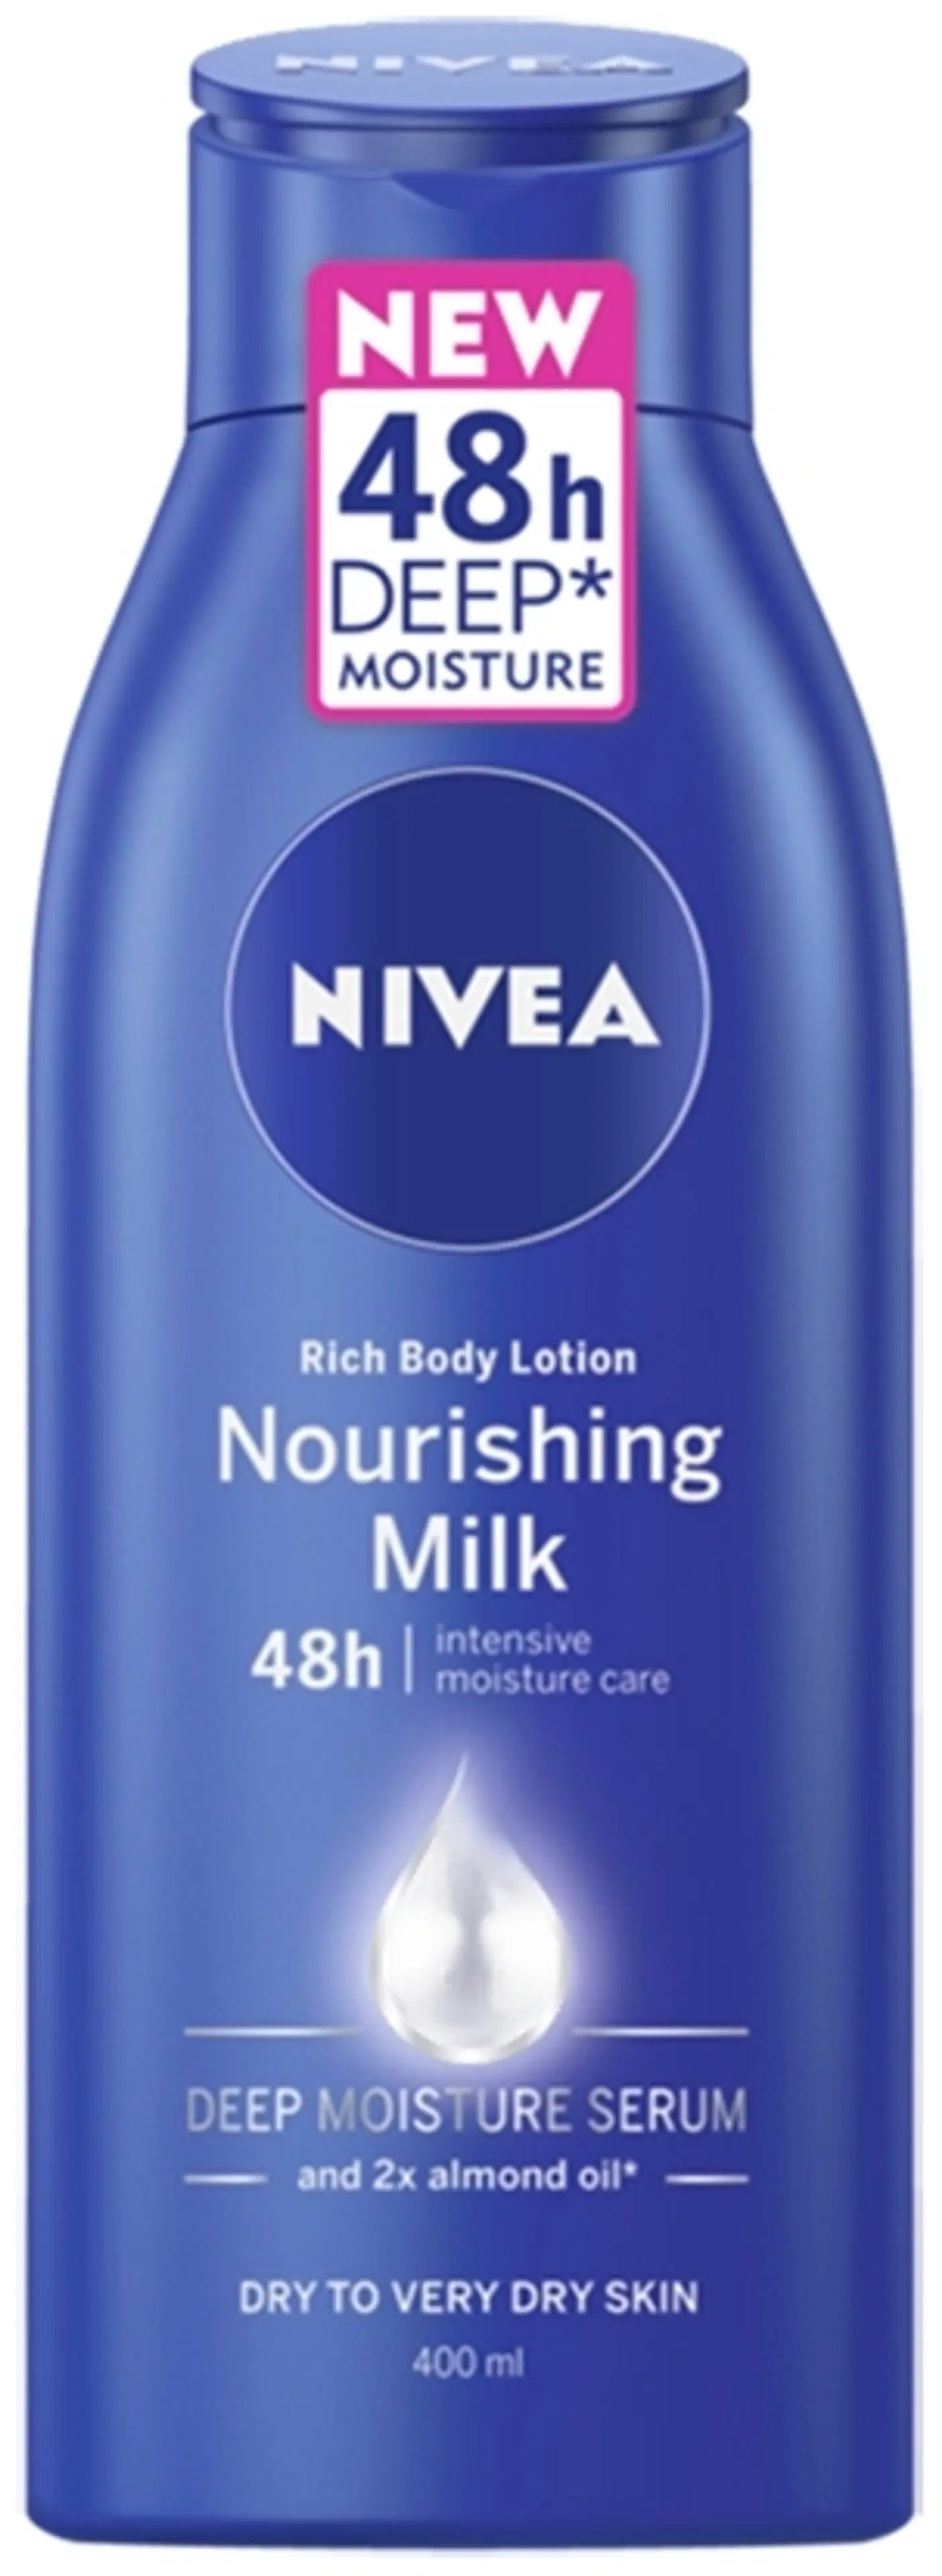 NIVEA 400ml Nourishing Milk Rich Body Lotion vartaloemulsio kuivalle ja erittäin kuivalle iholle